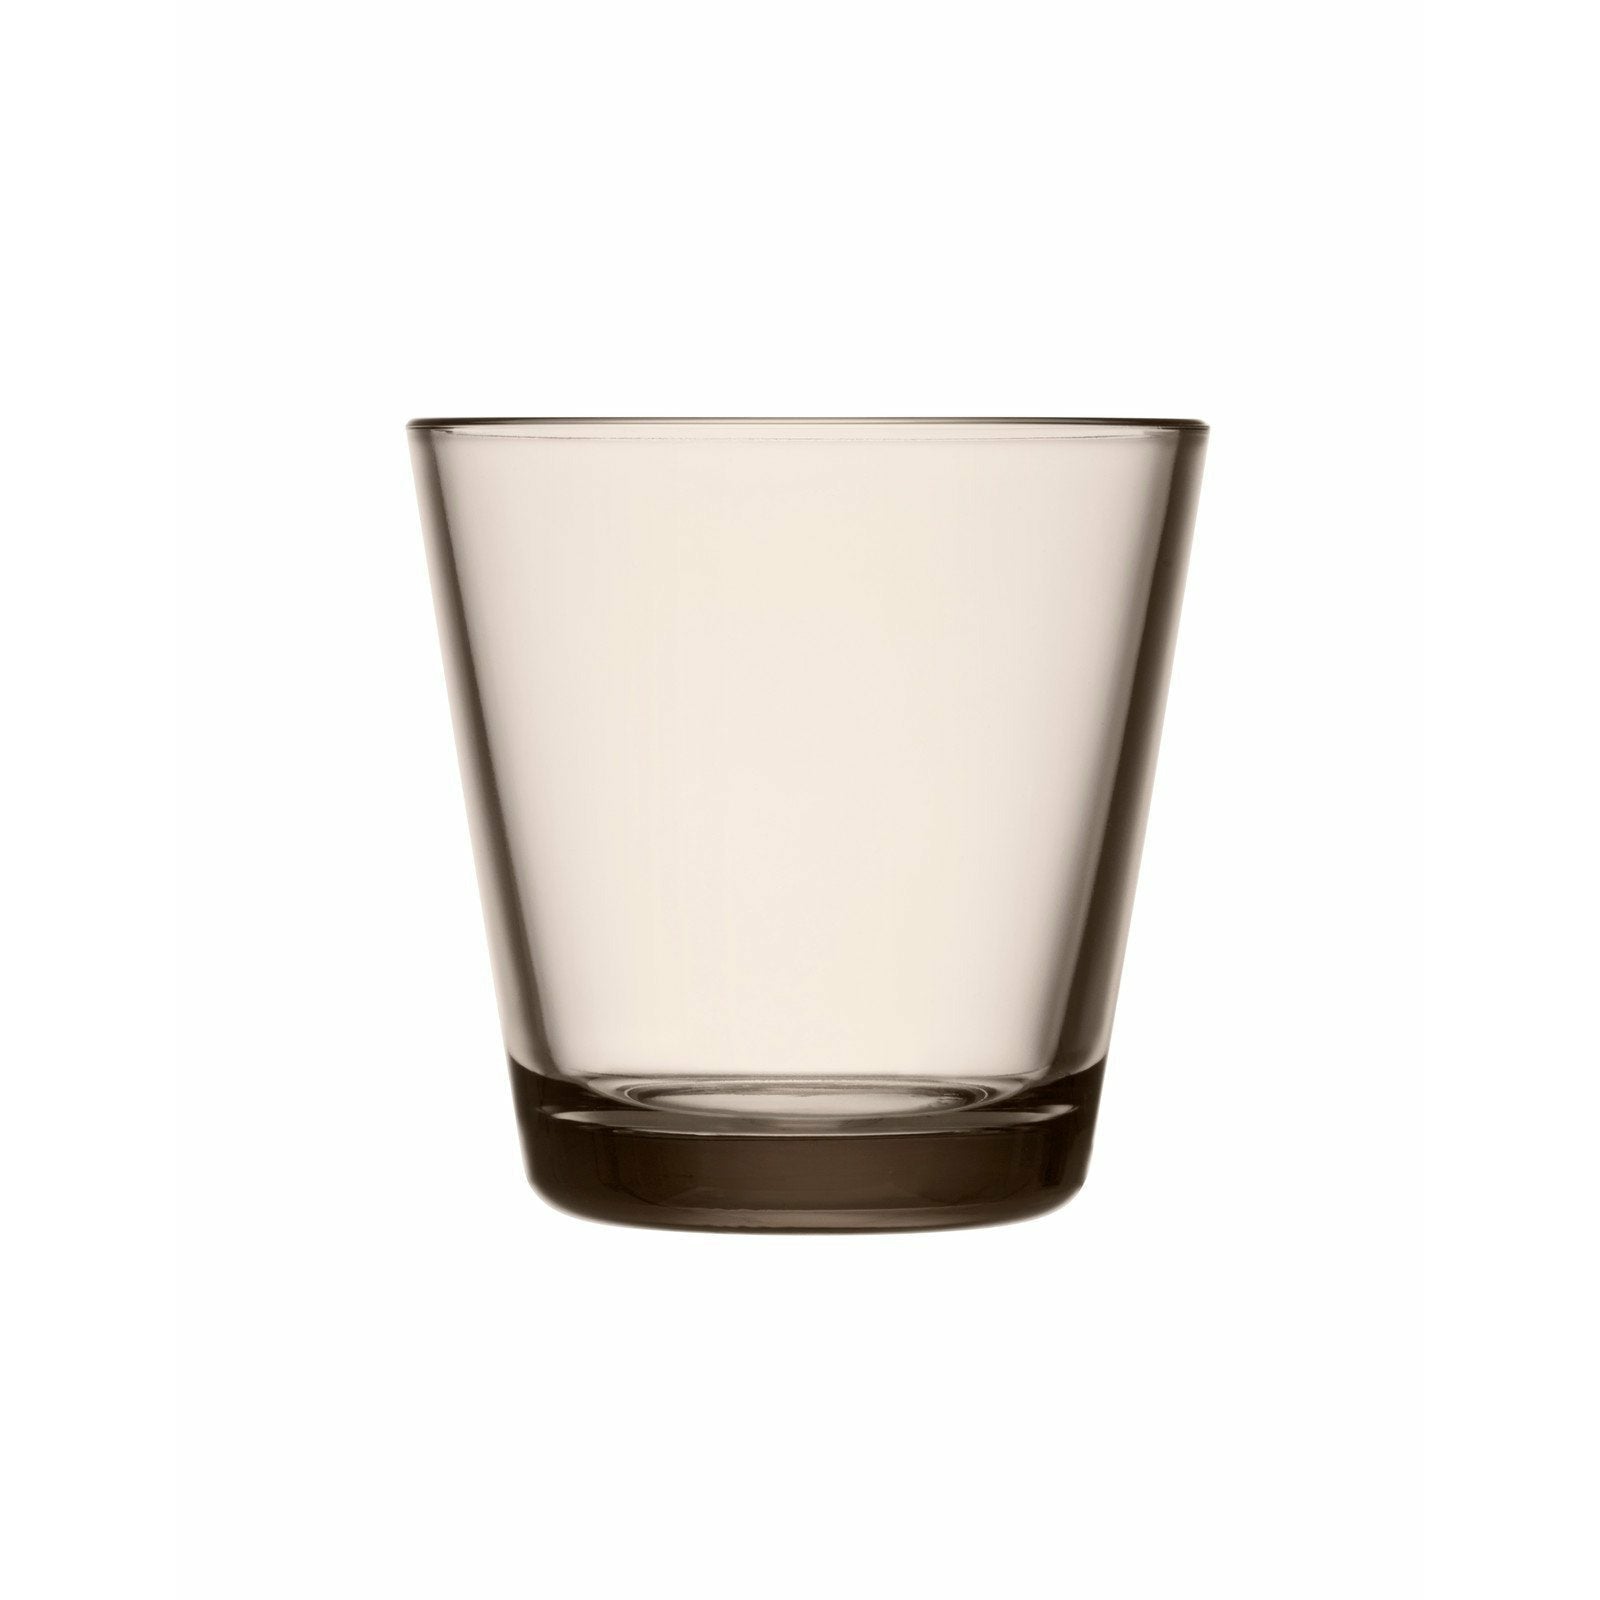 Iittala Katio Drinking Glass Linen 21cl, 2pcs.